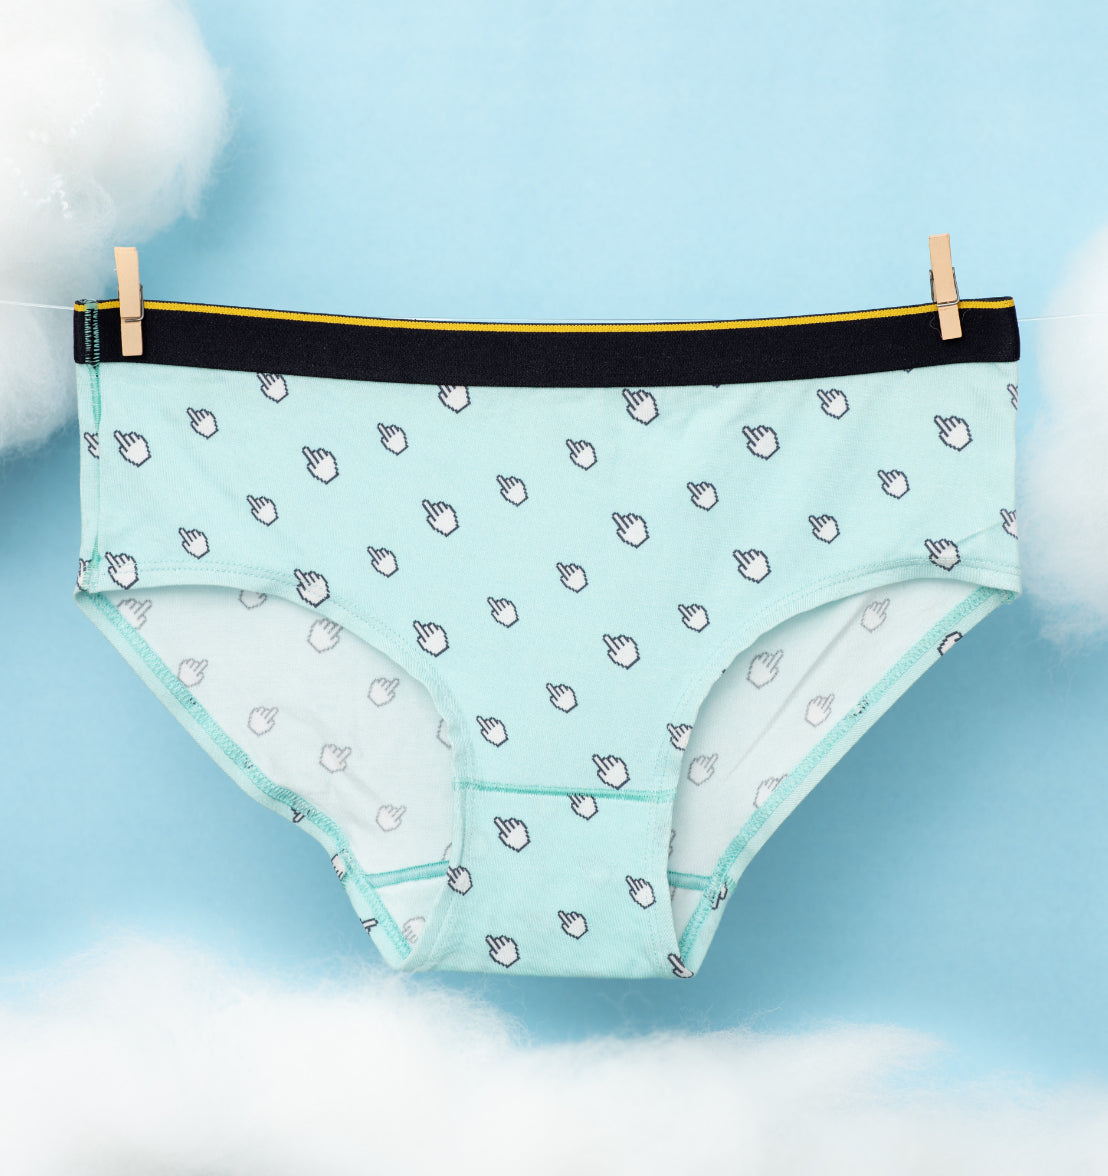 Buy stylish Trunks Underwear For Men online - Bummer